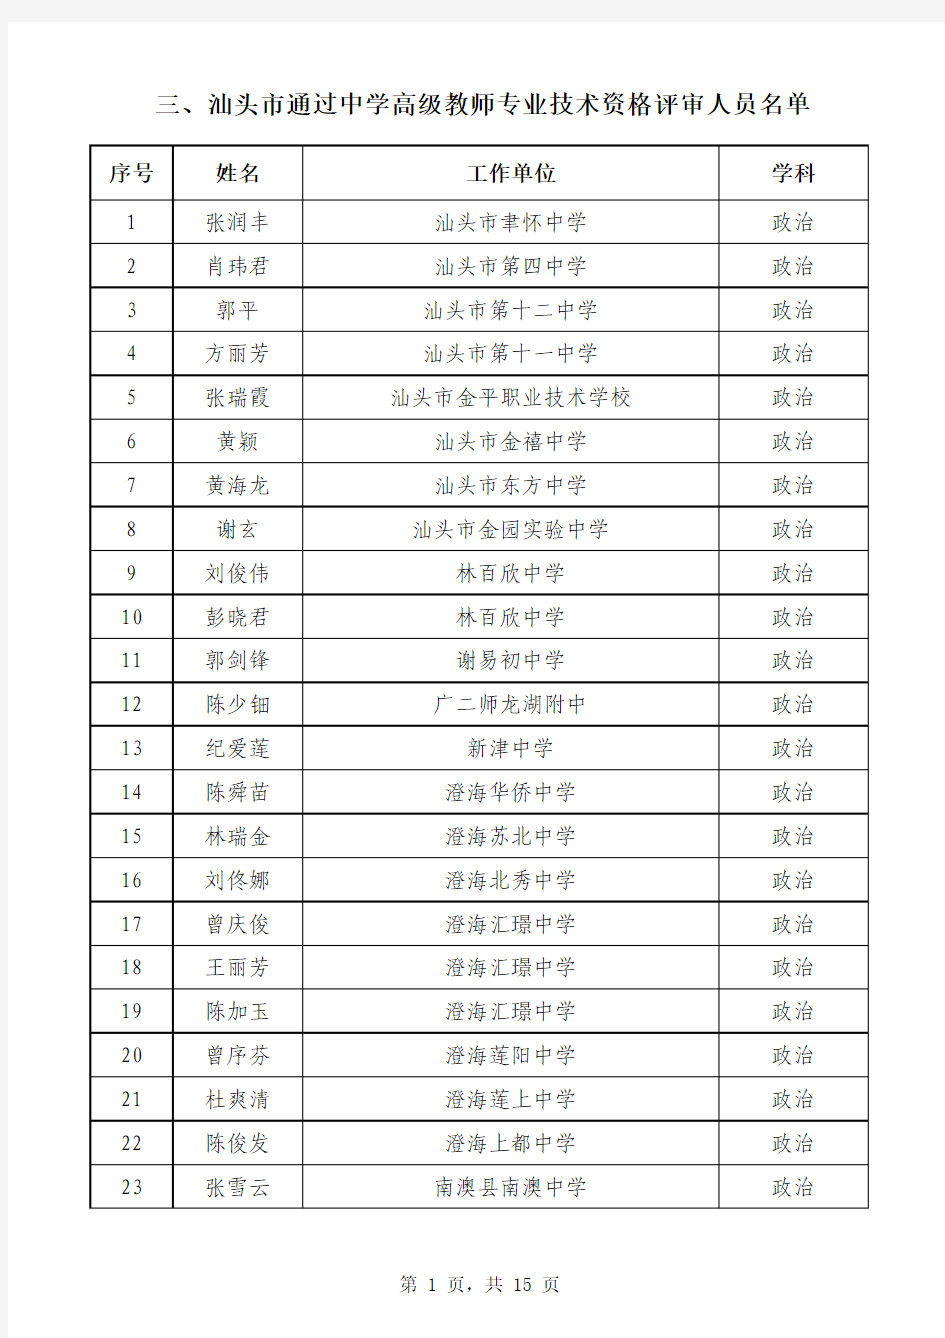 2013年广东省中学高级教师通过人员名单